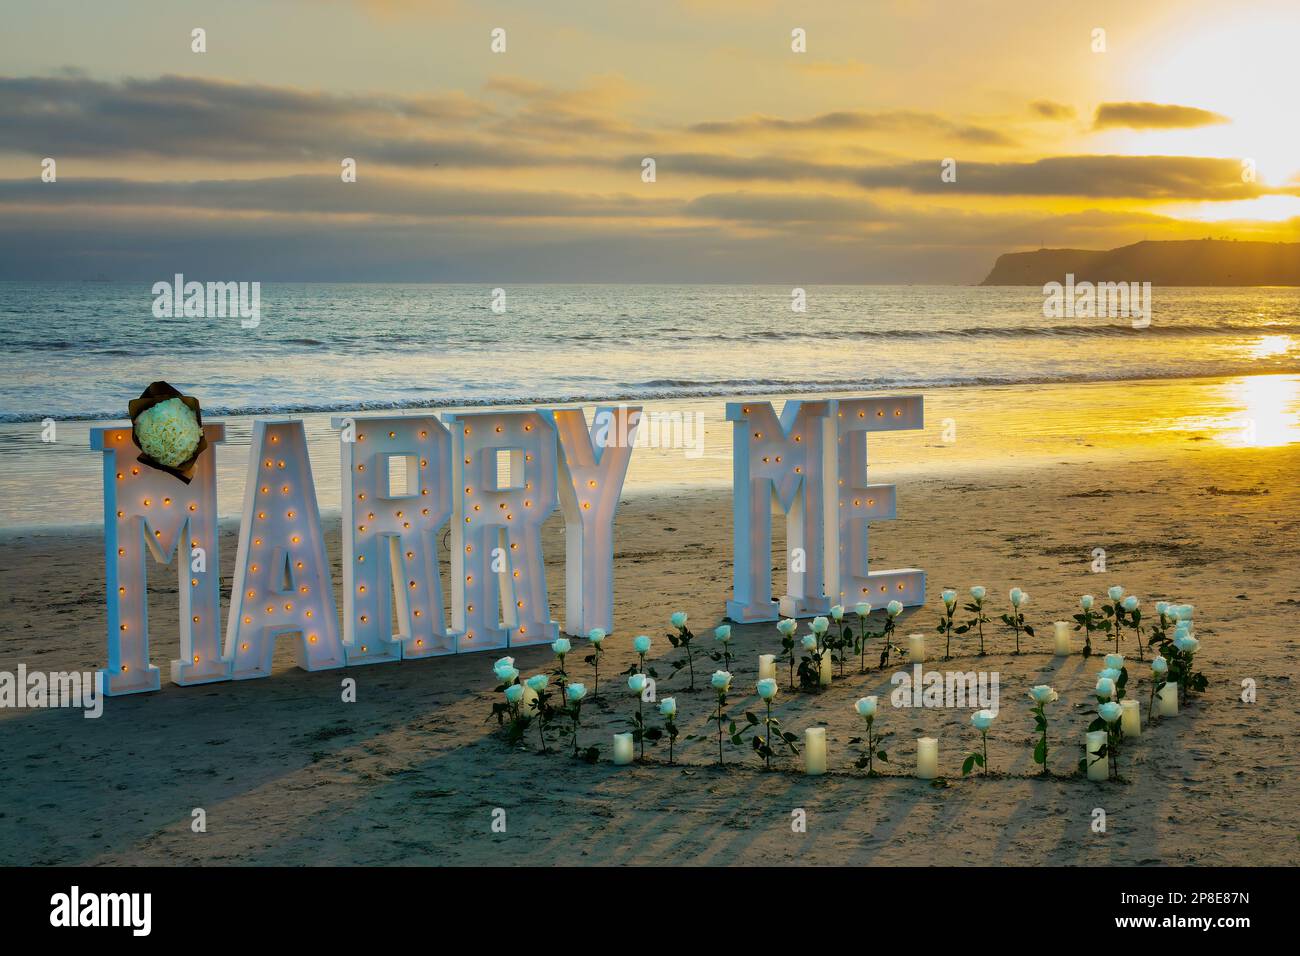 Me marier, proposition romantique sur la plage au coucher du soleil sur l'île de Coronado, San Diego, Californie Banque D'Images